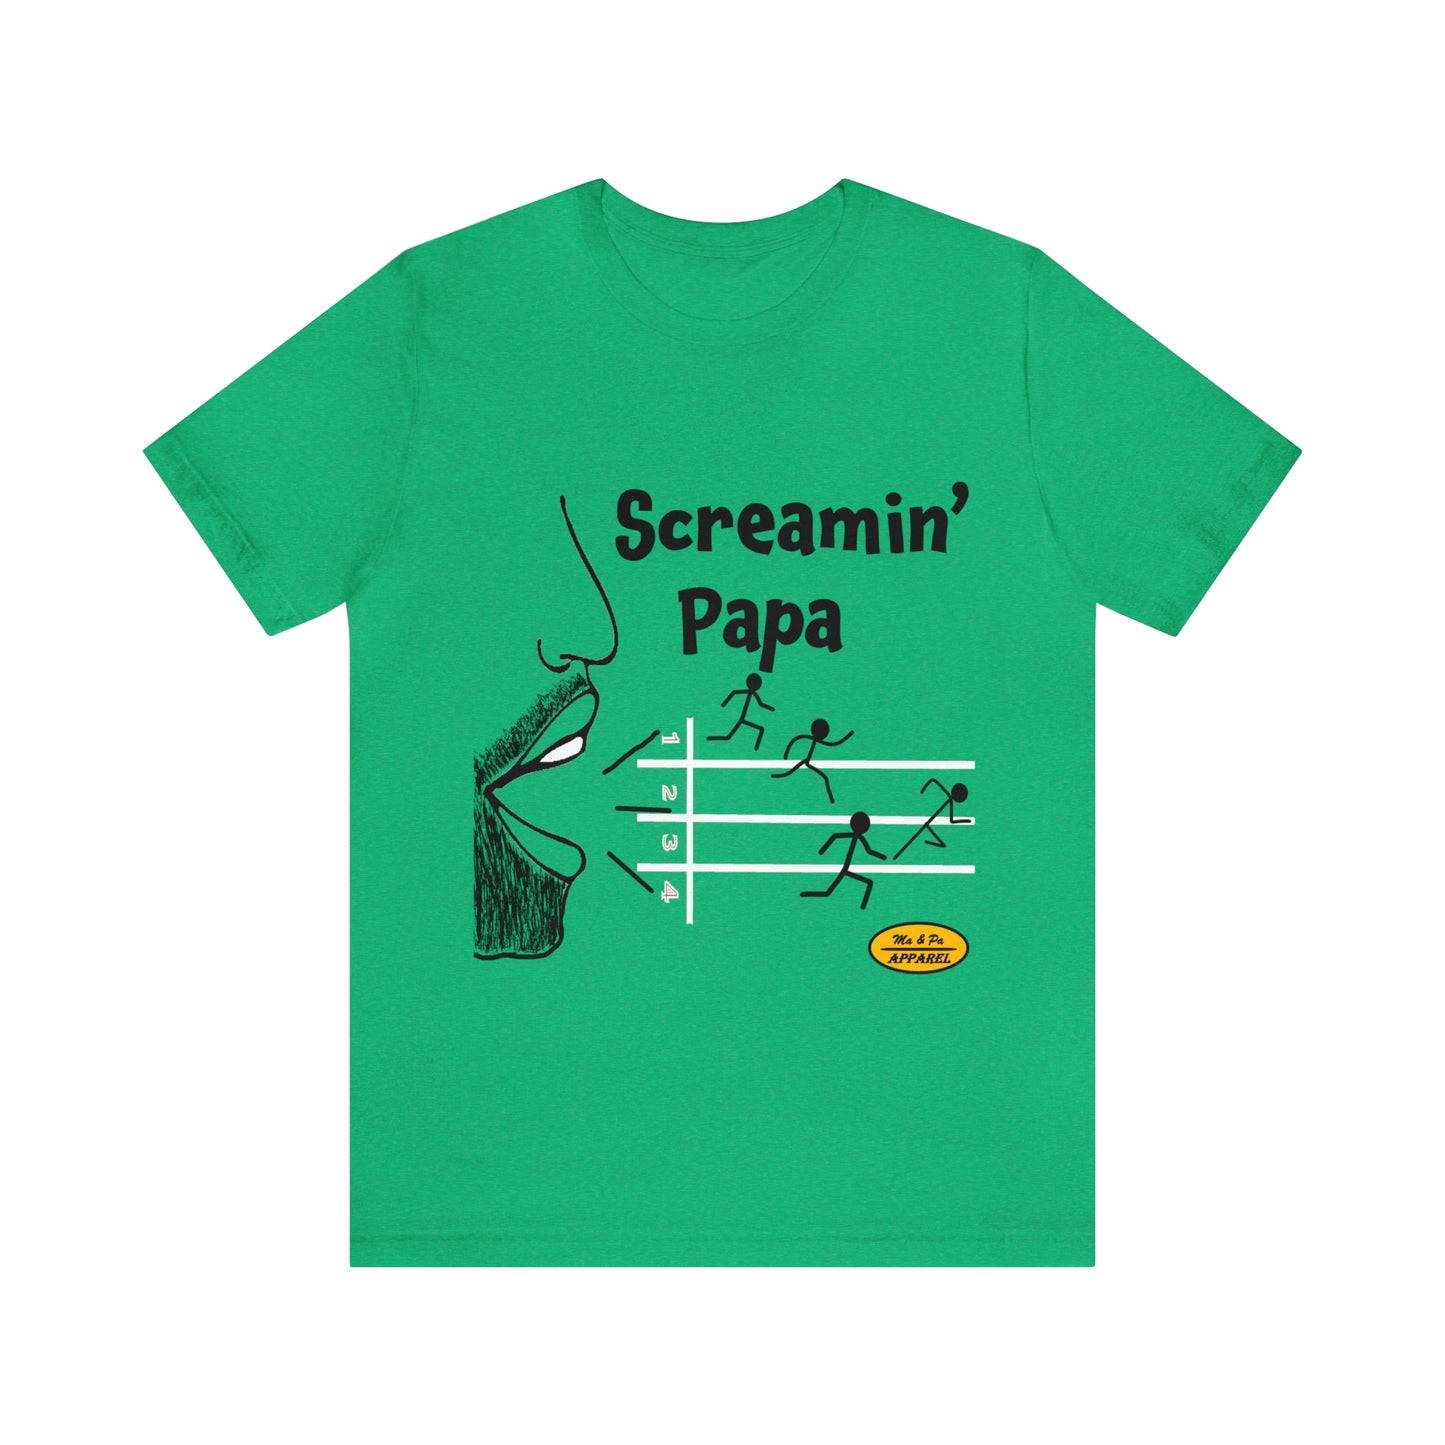 Screamin’ Papa Track Short Sleeve Tee